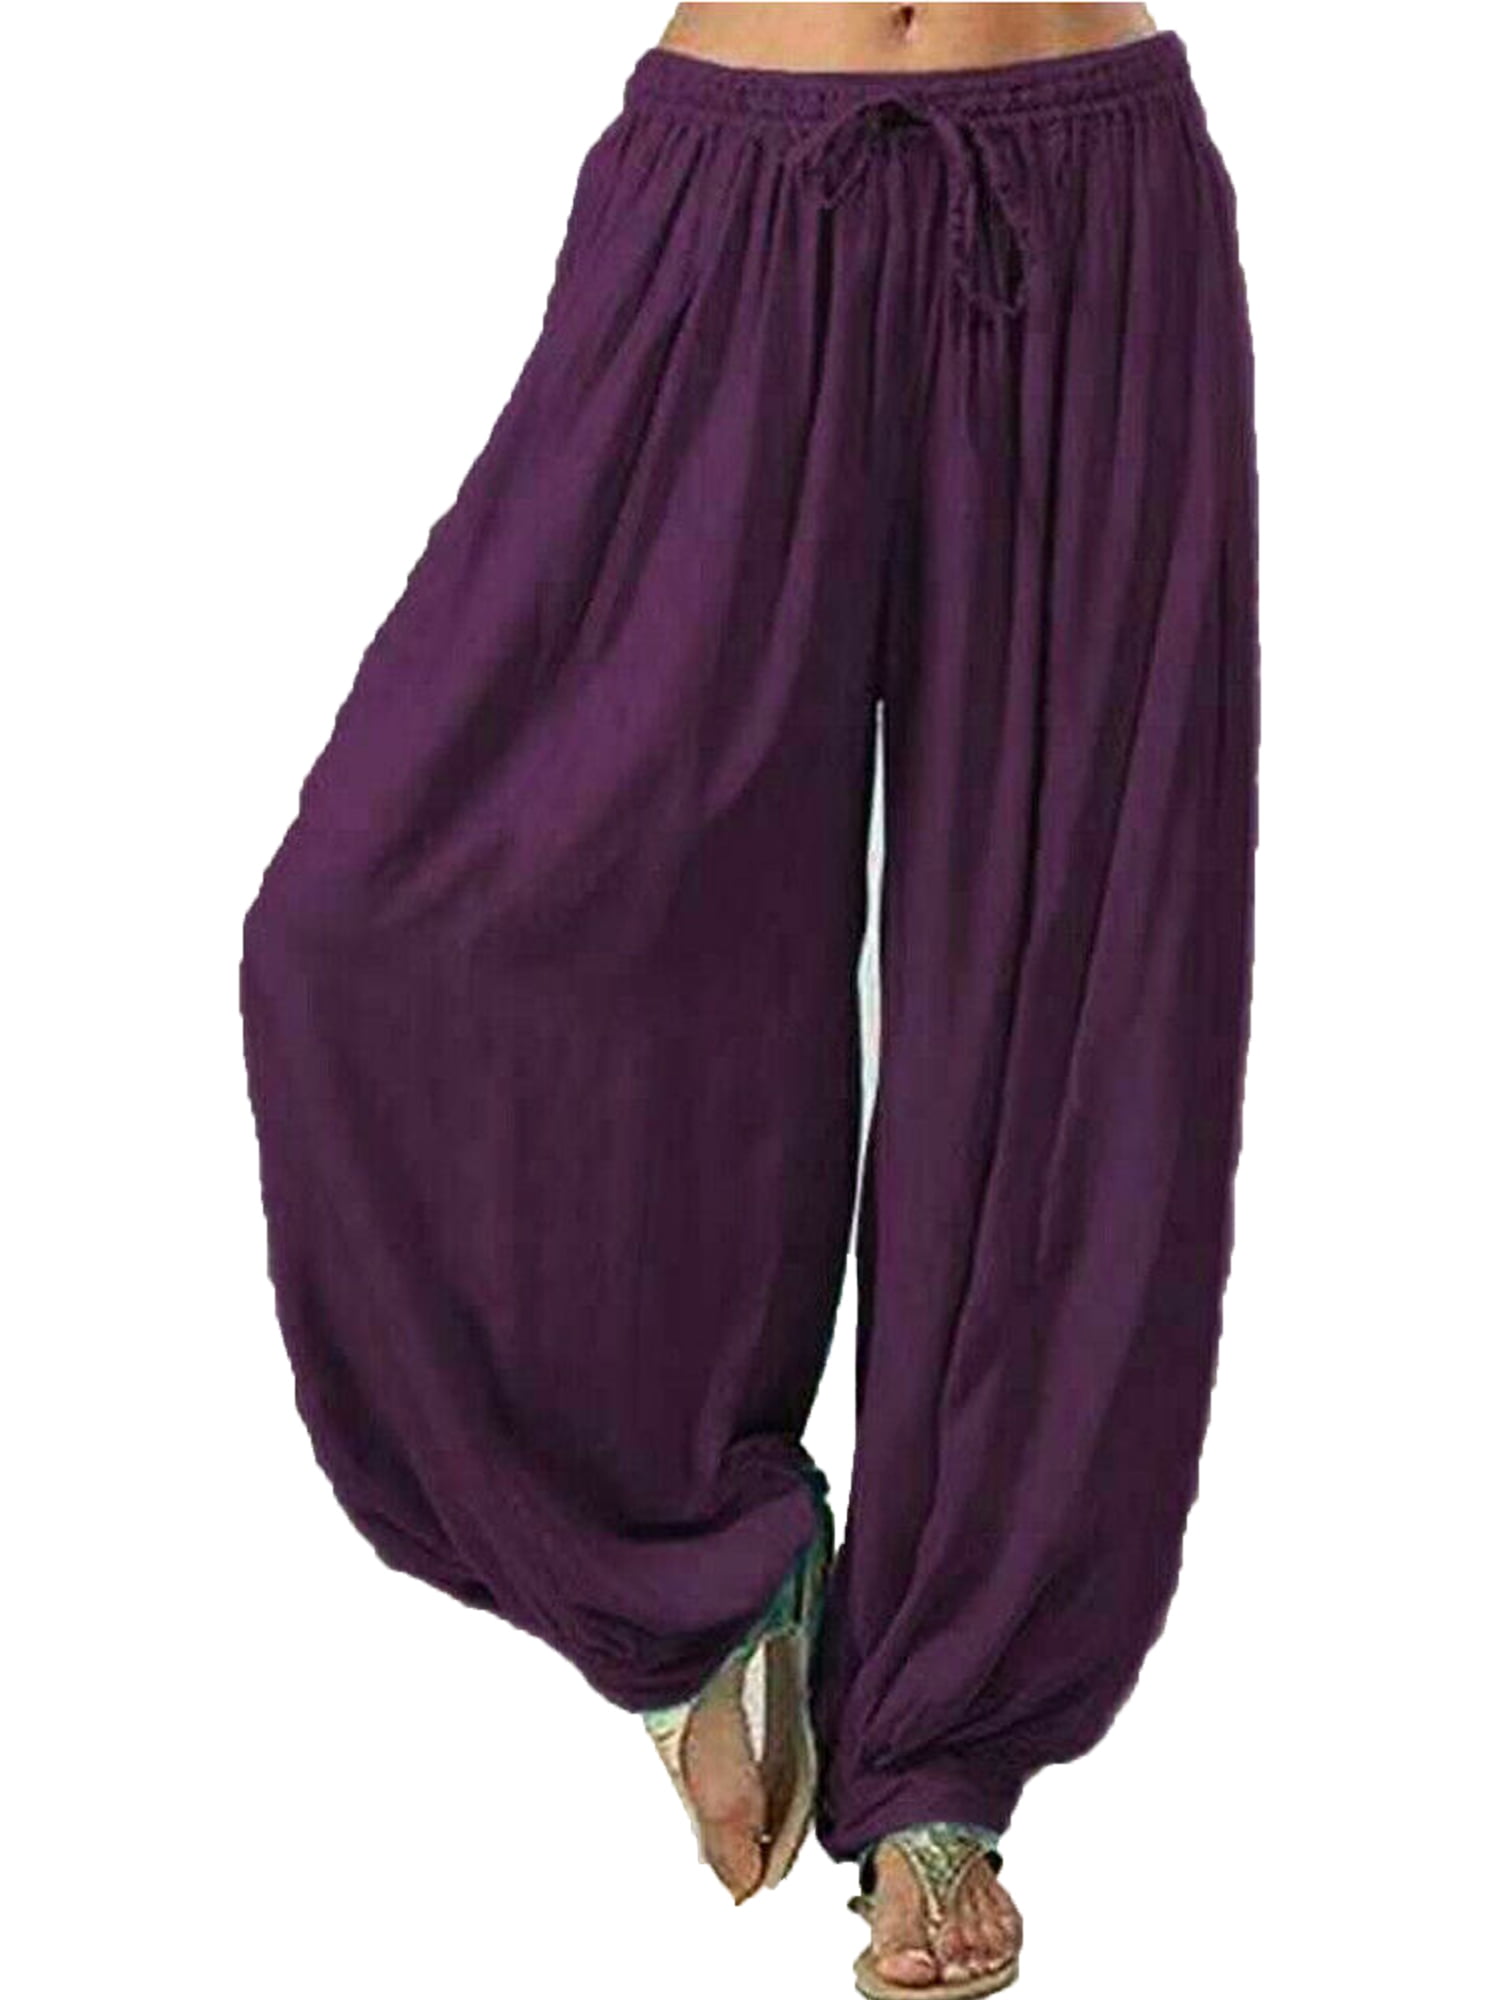 Pudcoco Women Ladies Casual Cotton Yoga Dance Long Pants Slacks ...